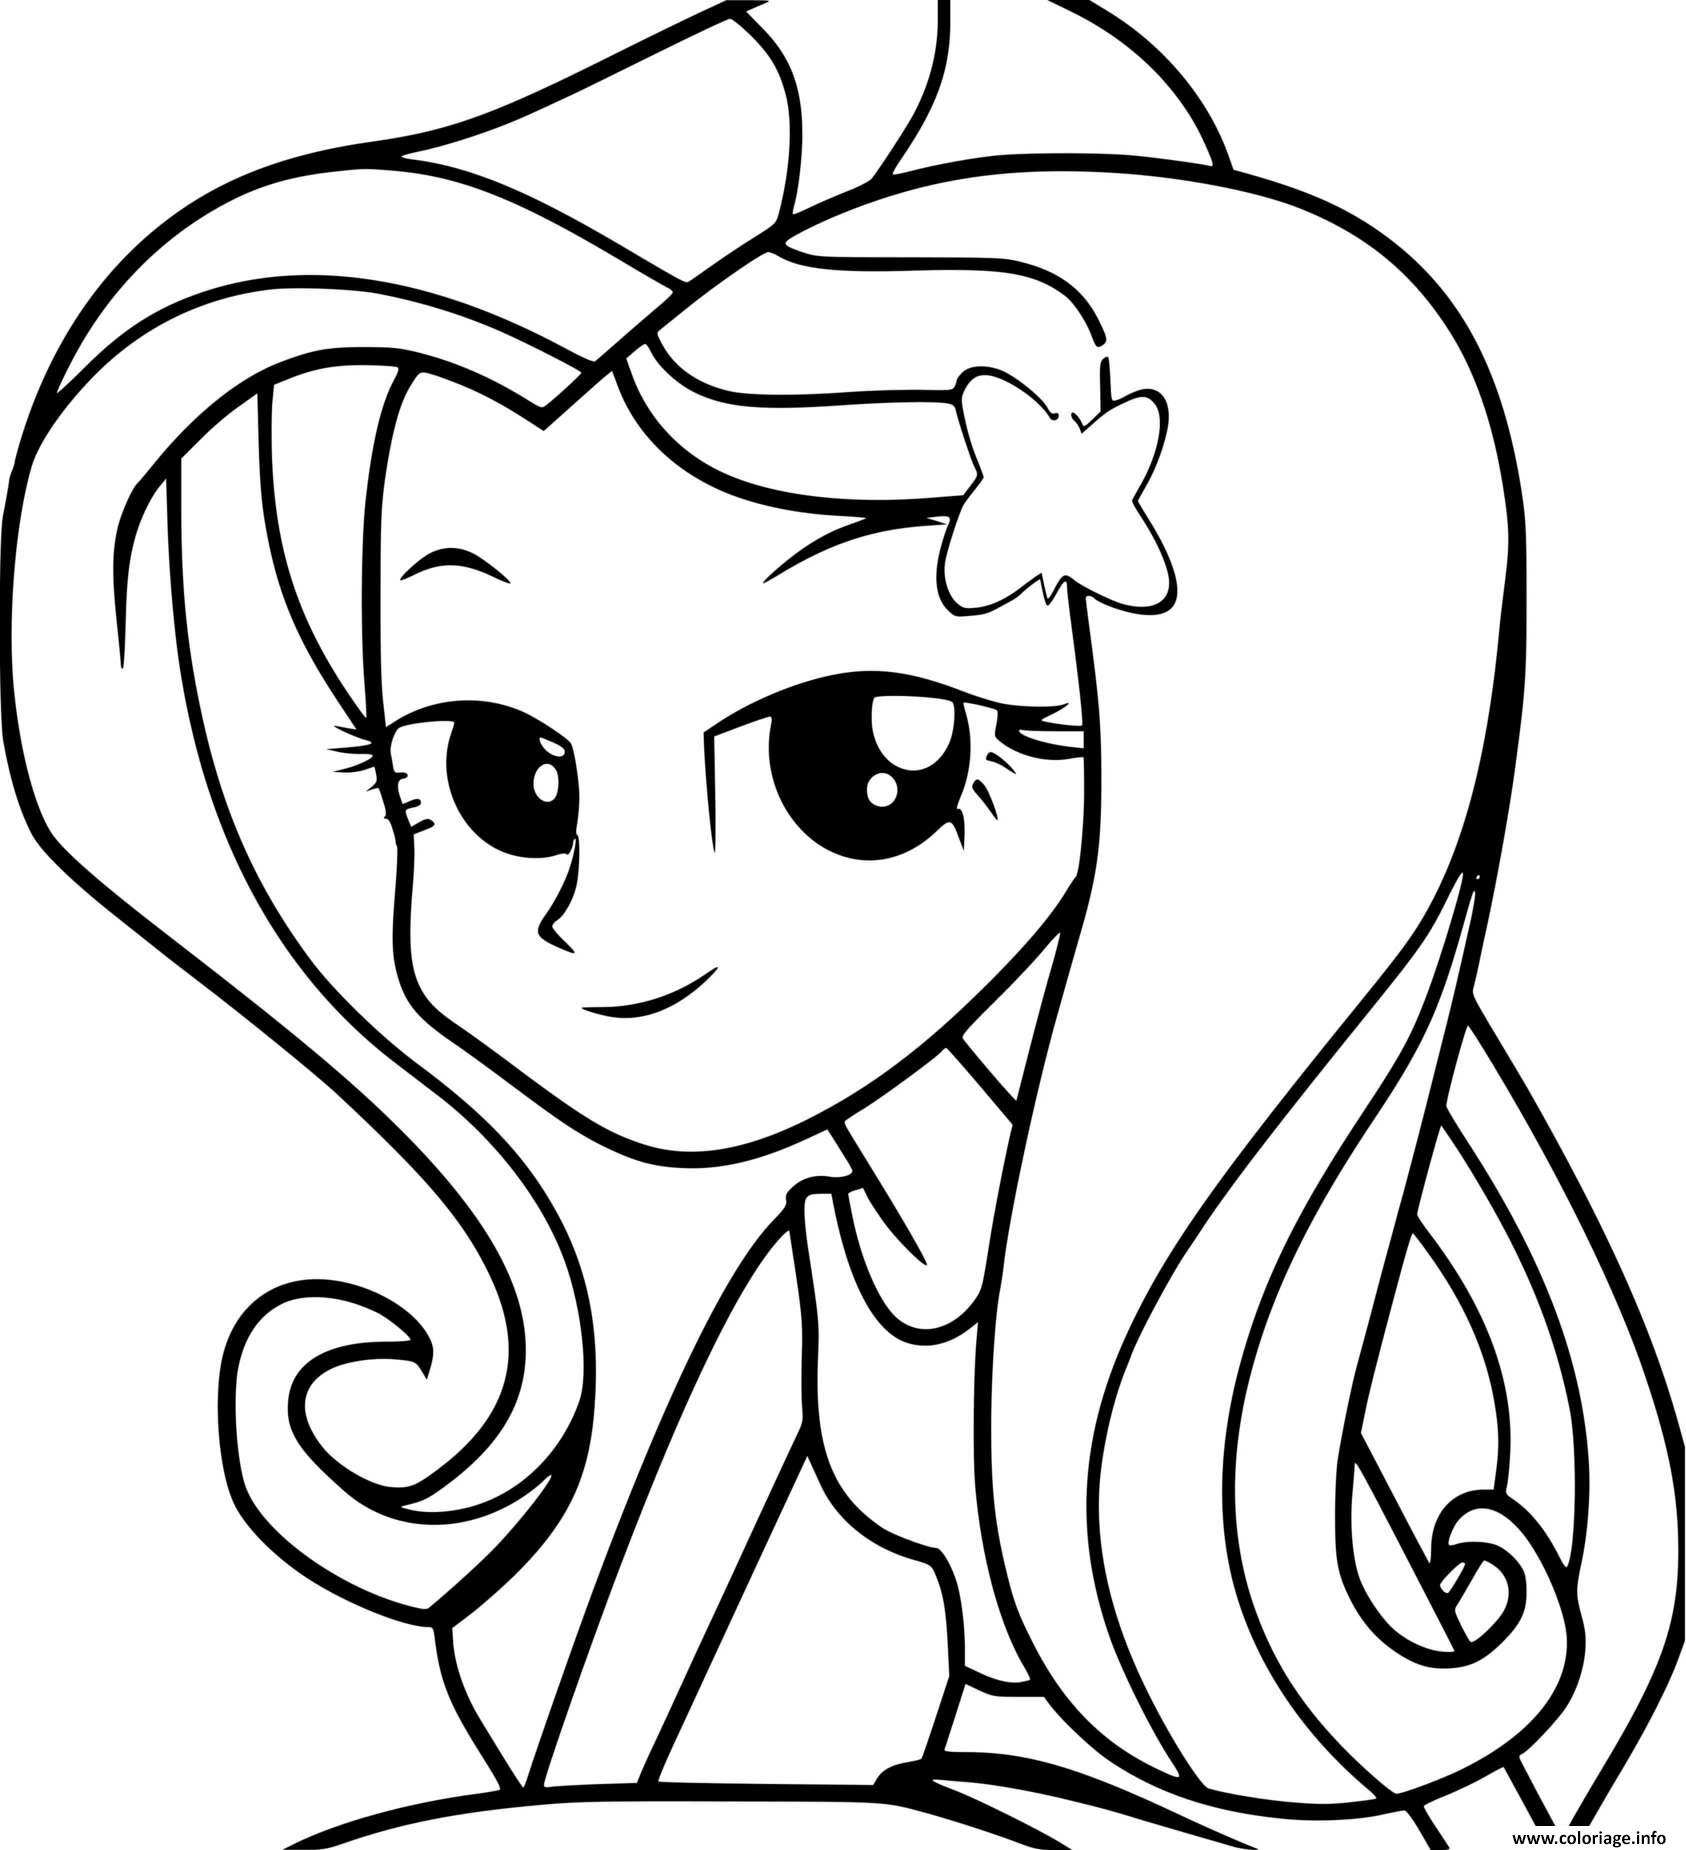 Dessin My Little Pony Equestria Girls Fluttershy cute princess Coloriage Gratuit à Imprimer